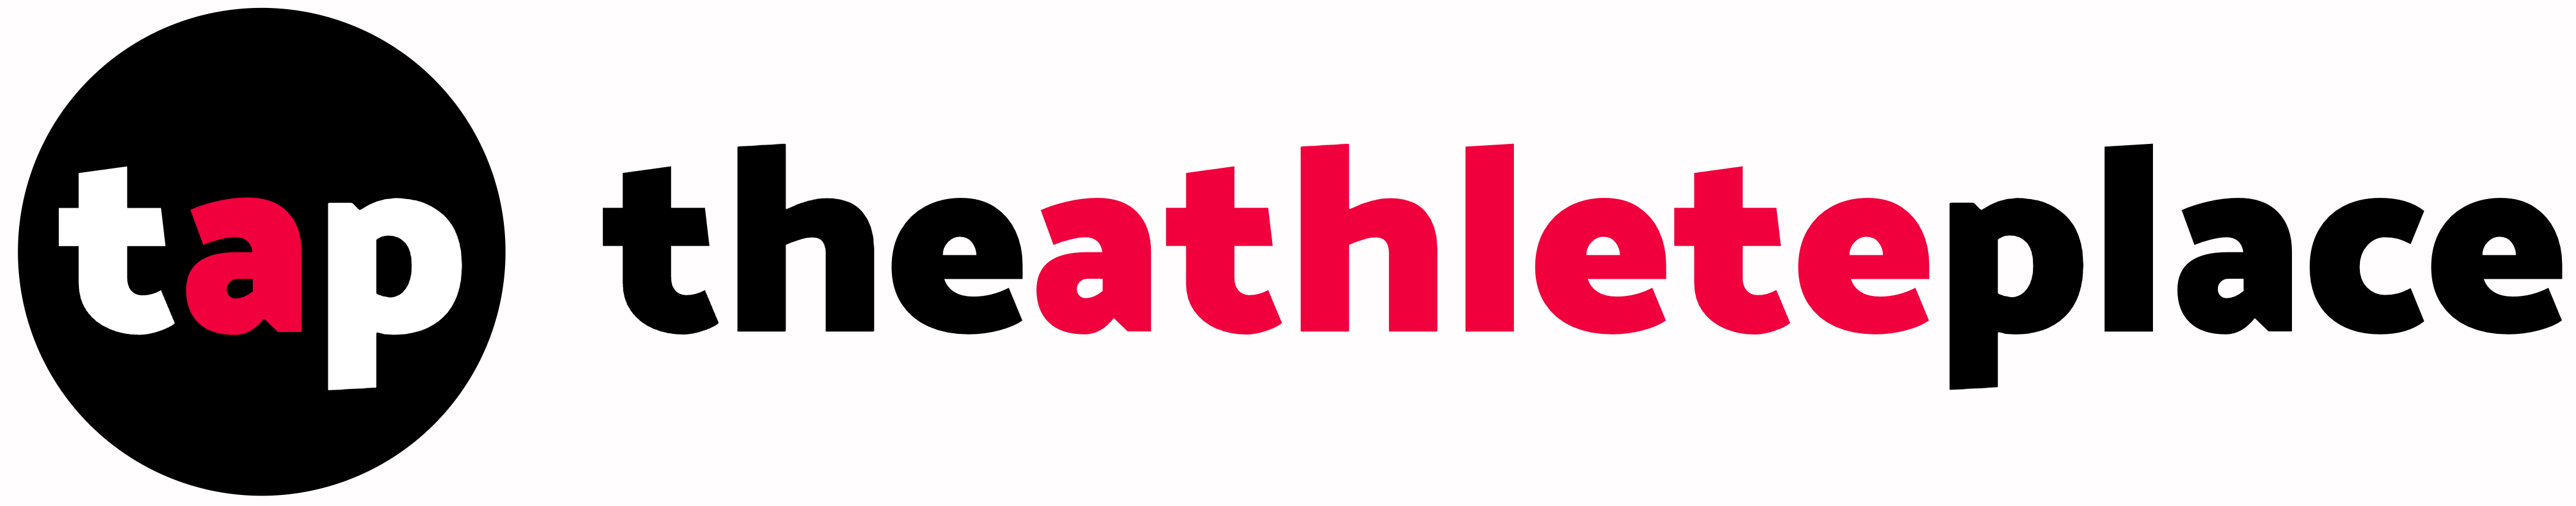 The Athlete Parent Place logo